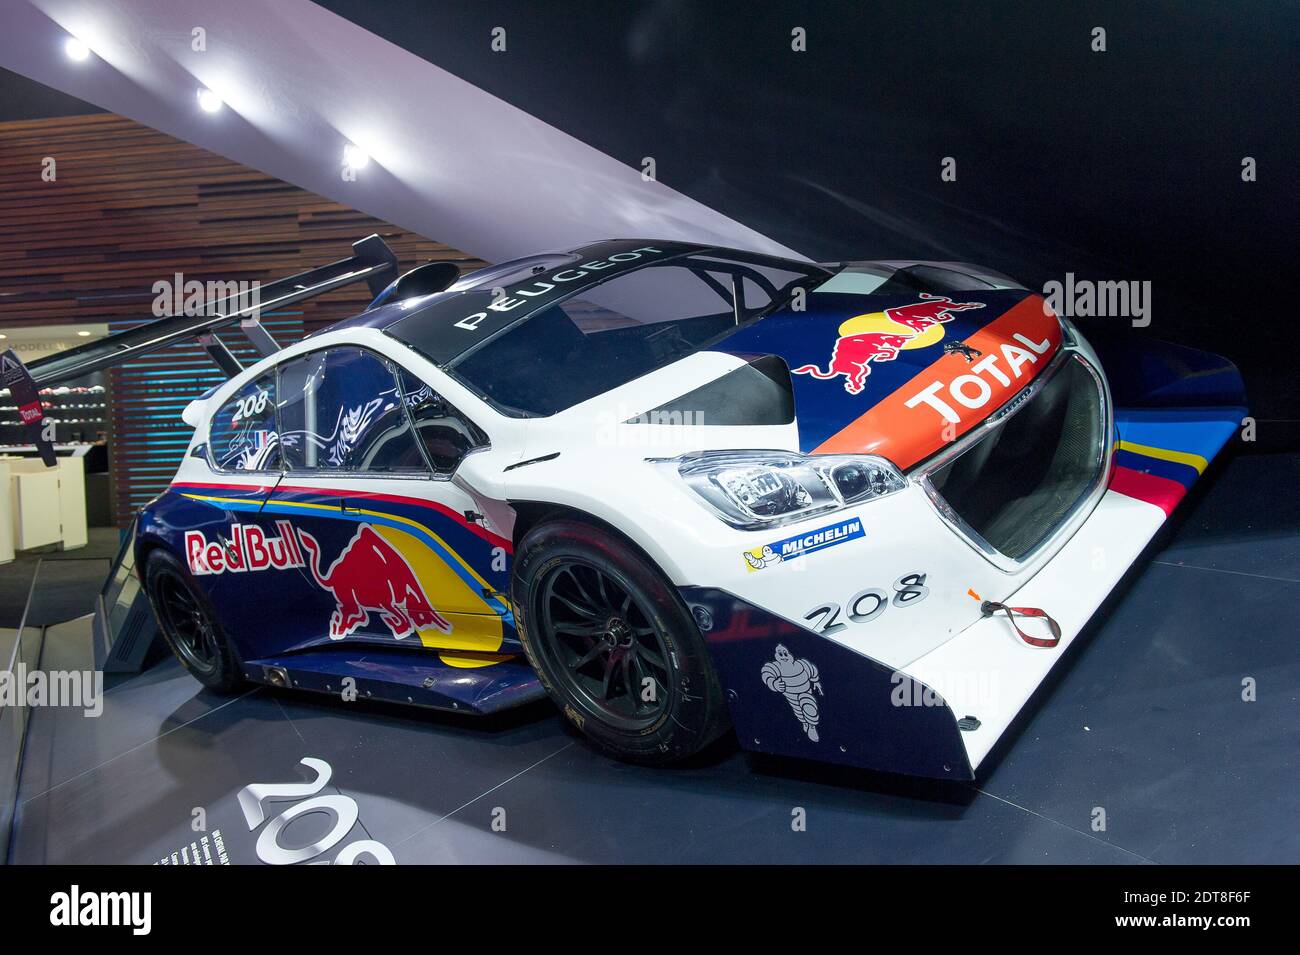 Schweiz Automobil Peugeot Stockfotos und -bilder Kaufen - Alamy